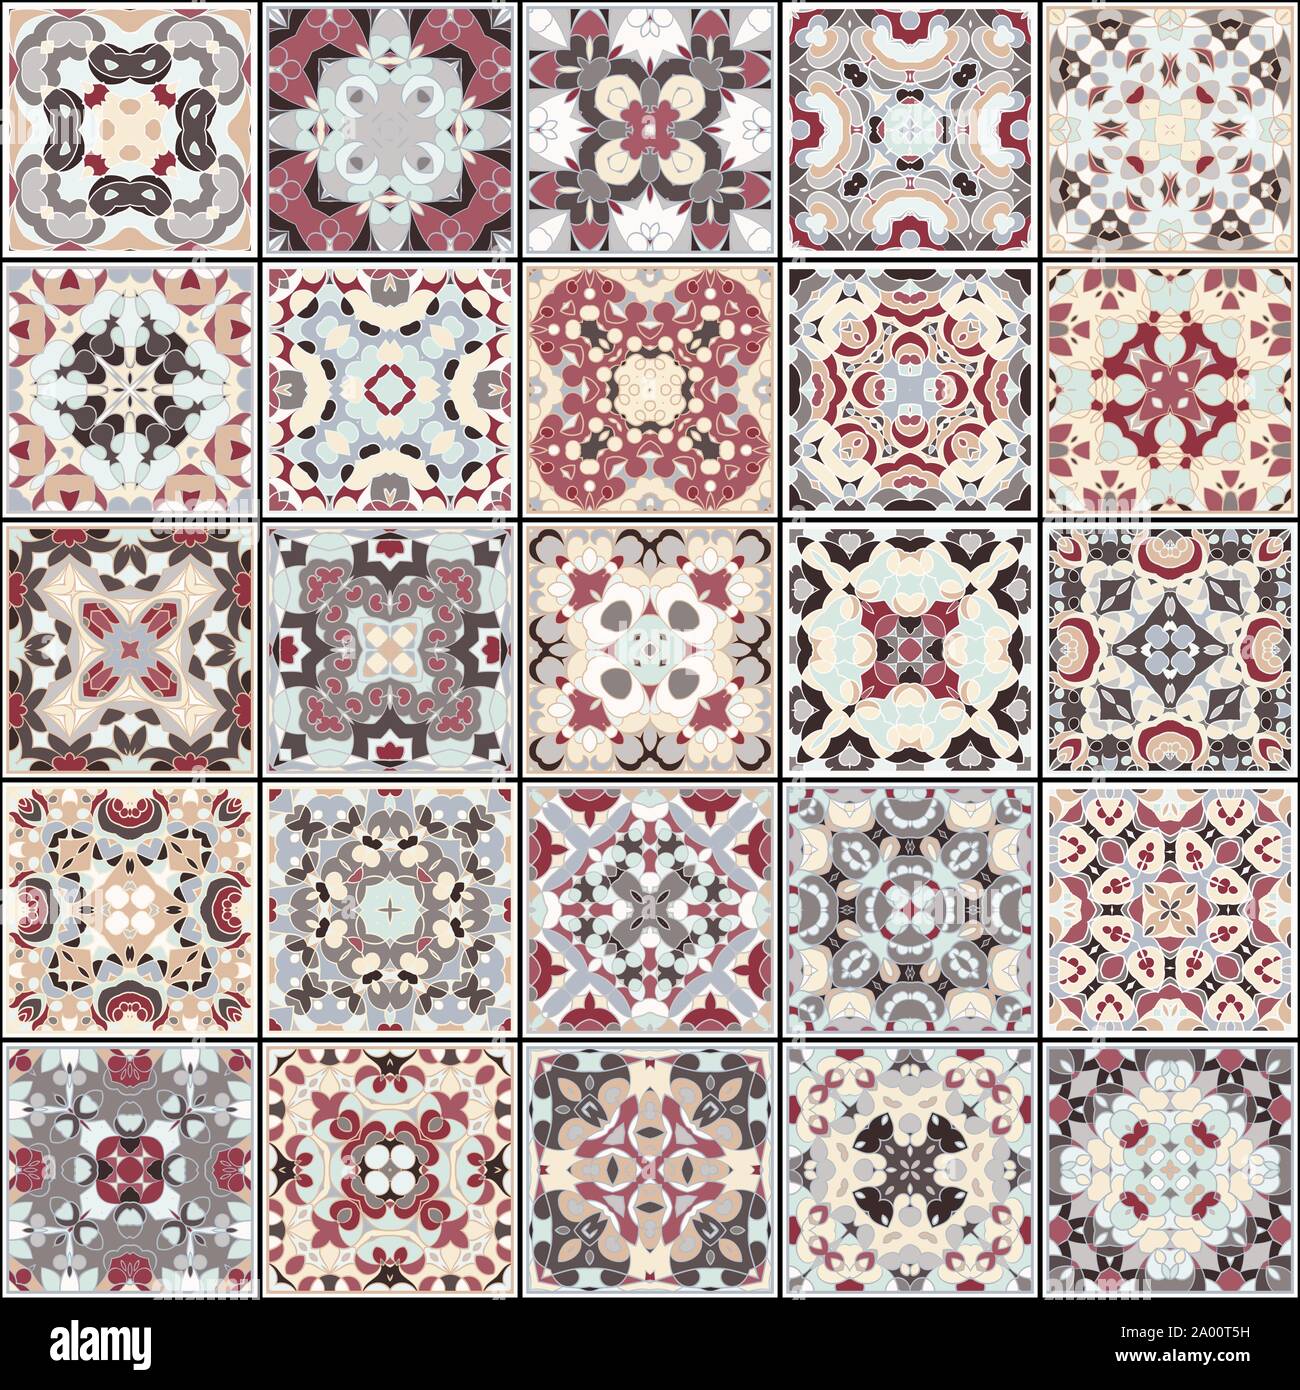 Eine Sammlung von Keramikfliesen in Rot und Beige. Eine Reihe von quadratischen Muster im ethnischen Stil. Vector Illustration. Stock Vektor